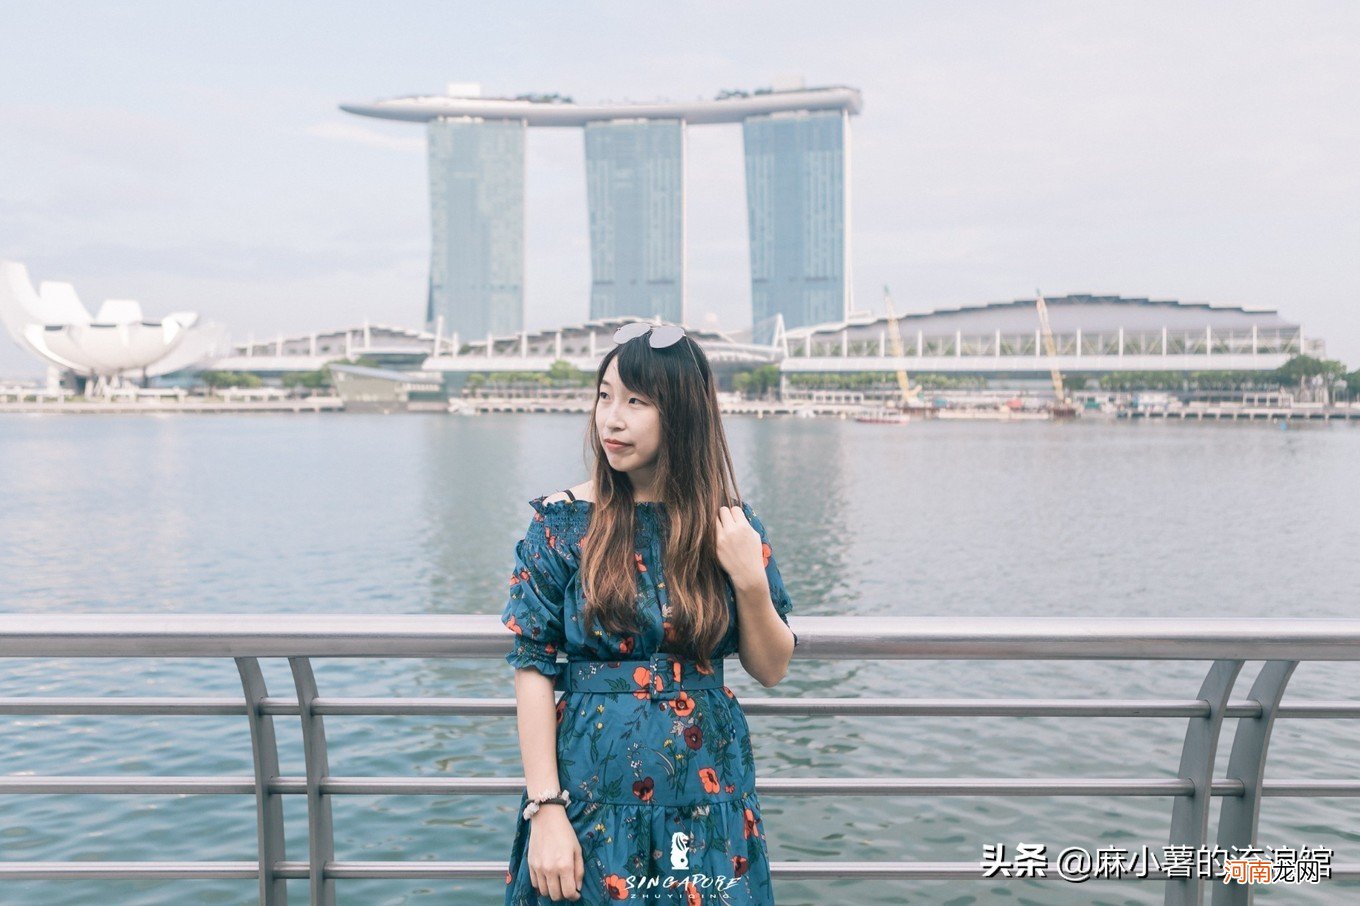 新加坡的三大标志性建筑 新加坡旅游景点